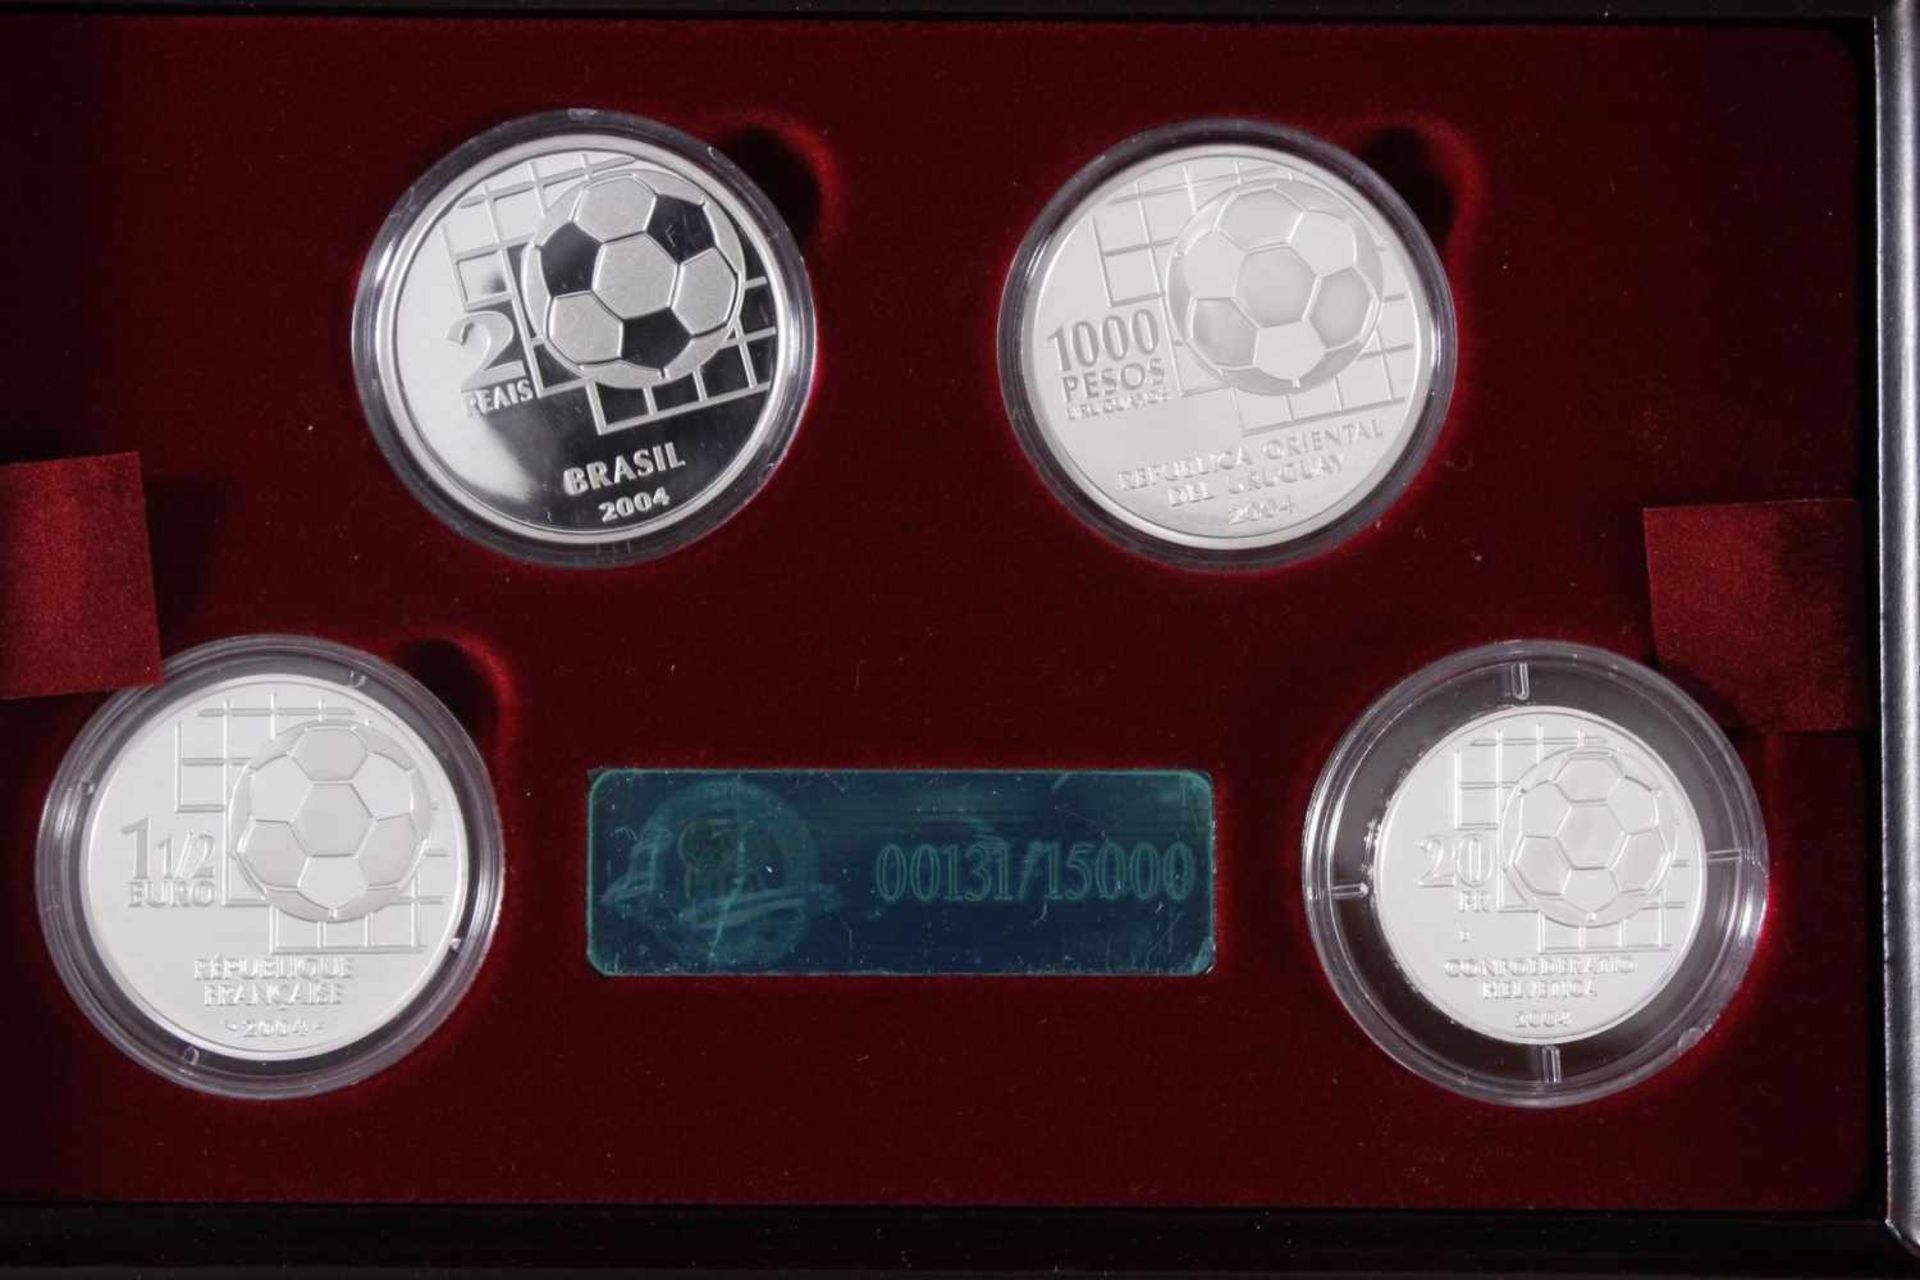 100 Jahre Fifa, die offiziellen Silber-Gedenkmünzen 20042 Reais Brasilien 925er Silber. 1 1/2 Euro - Bild 3 aus 5